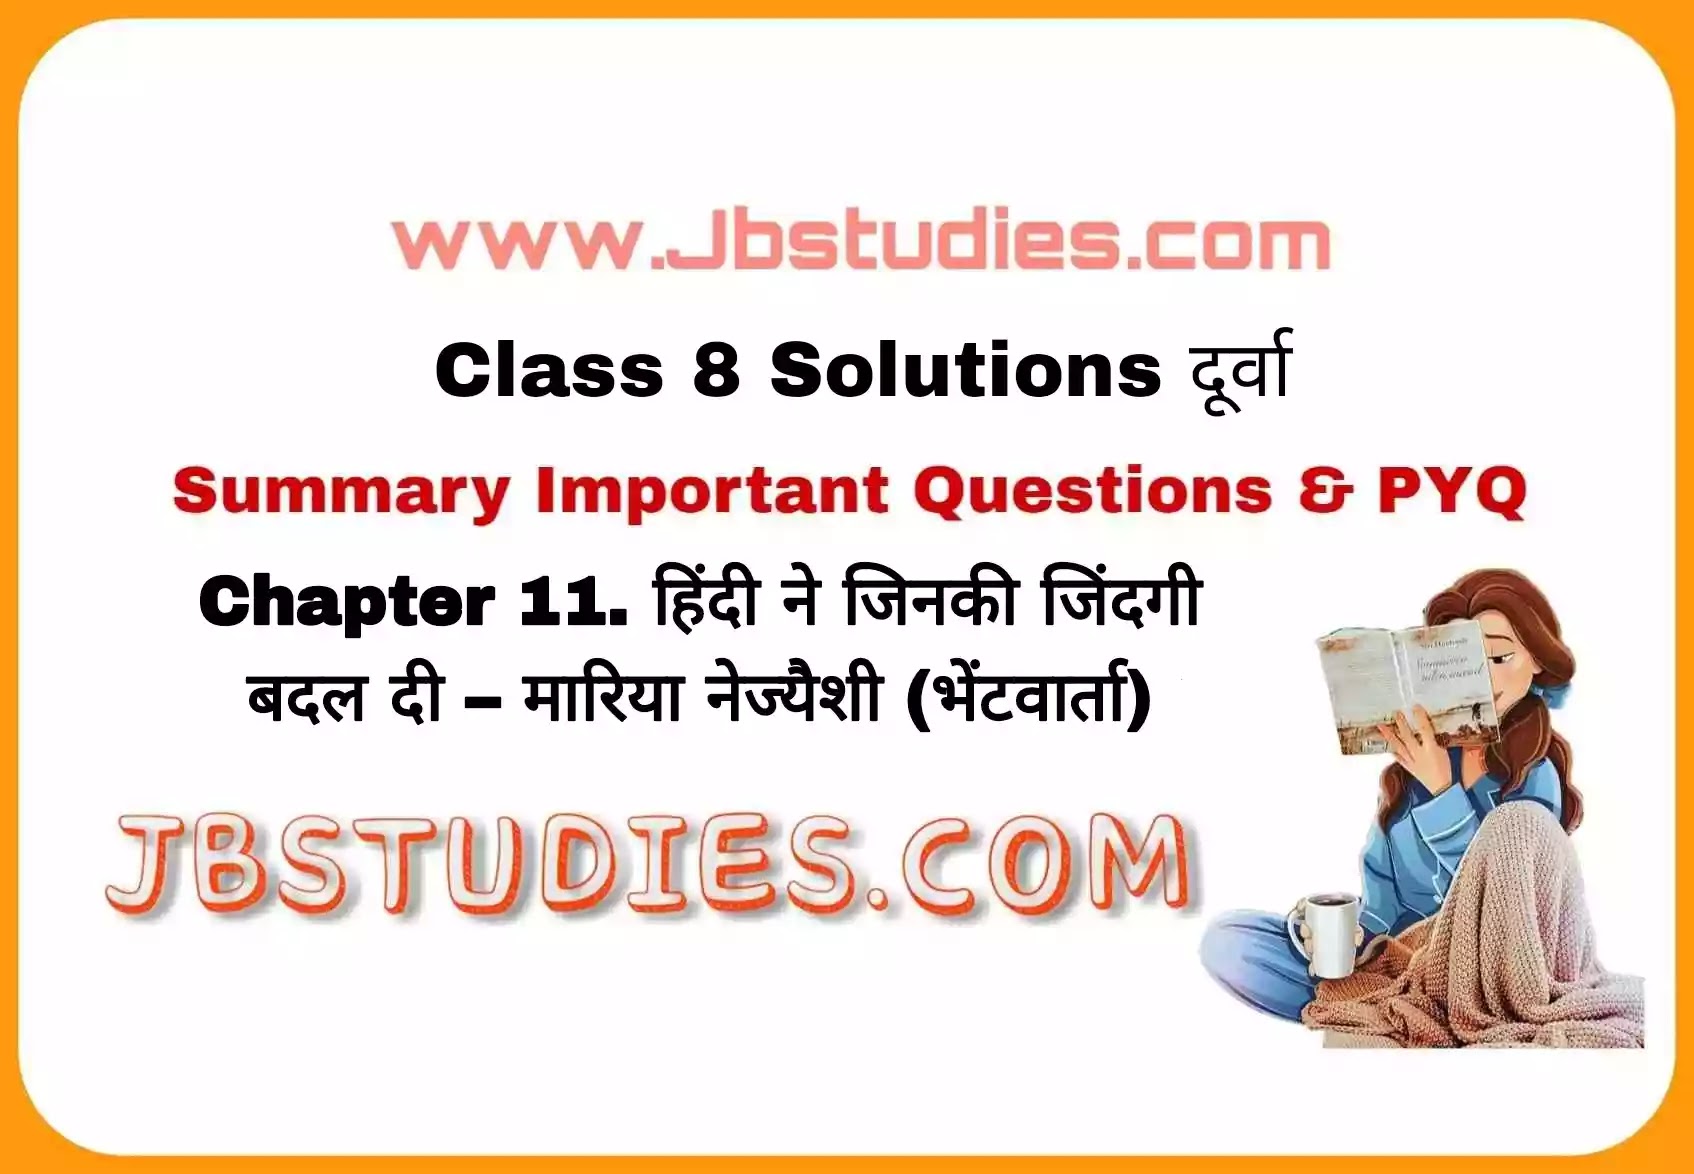 Solutions Class 8 दूर्वा Chapter-11 (हिन्दी ने जिनकी जिंदगी बदल दी)